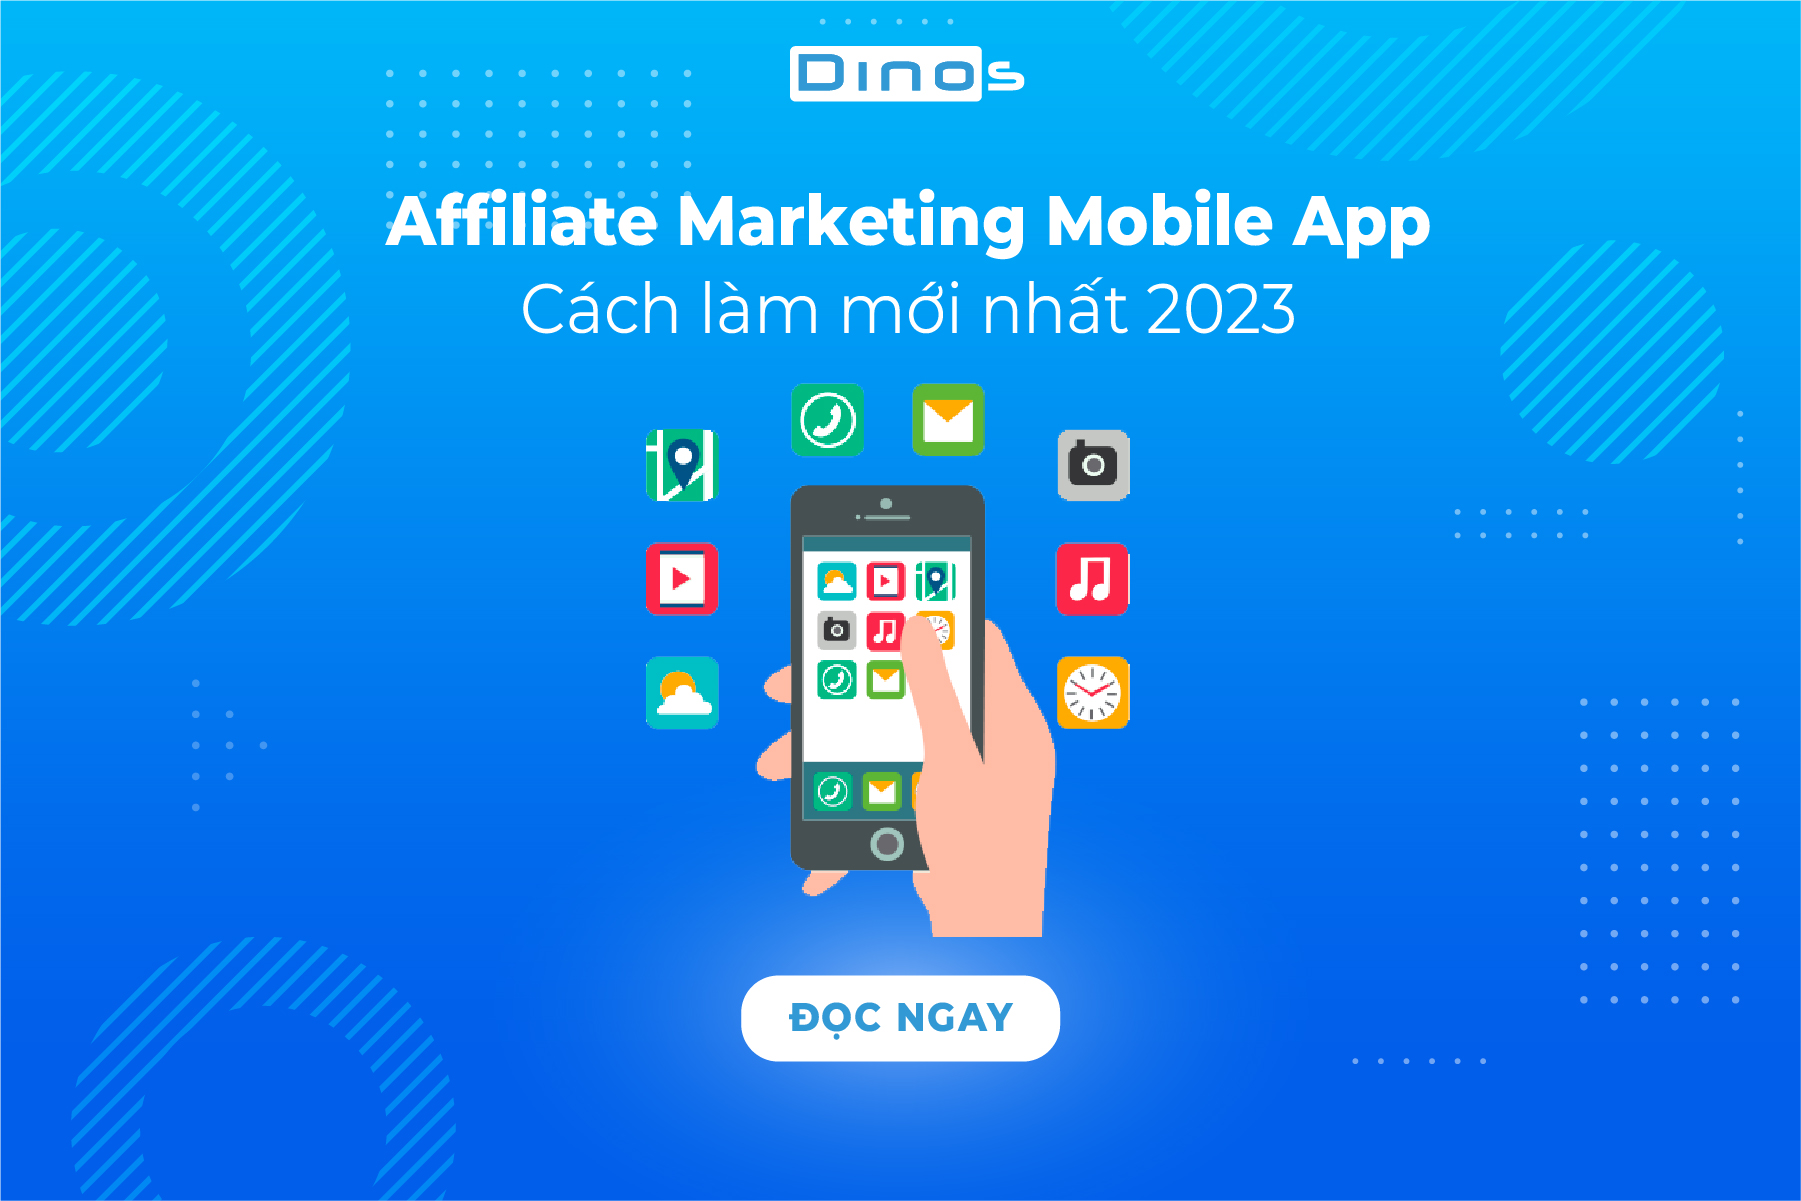 Affiliate Marketing Mobile App - Cách làm mới nhất 2023